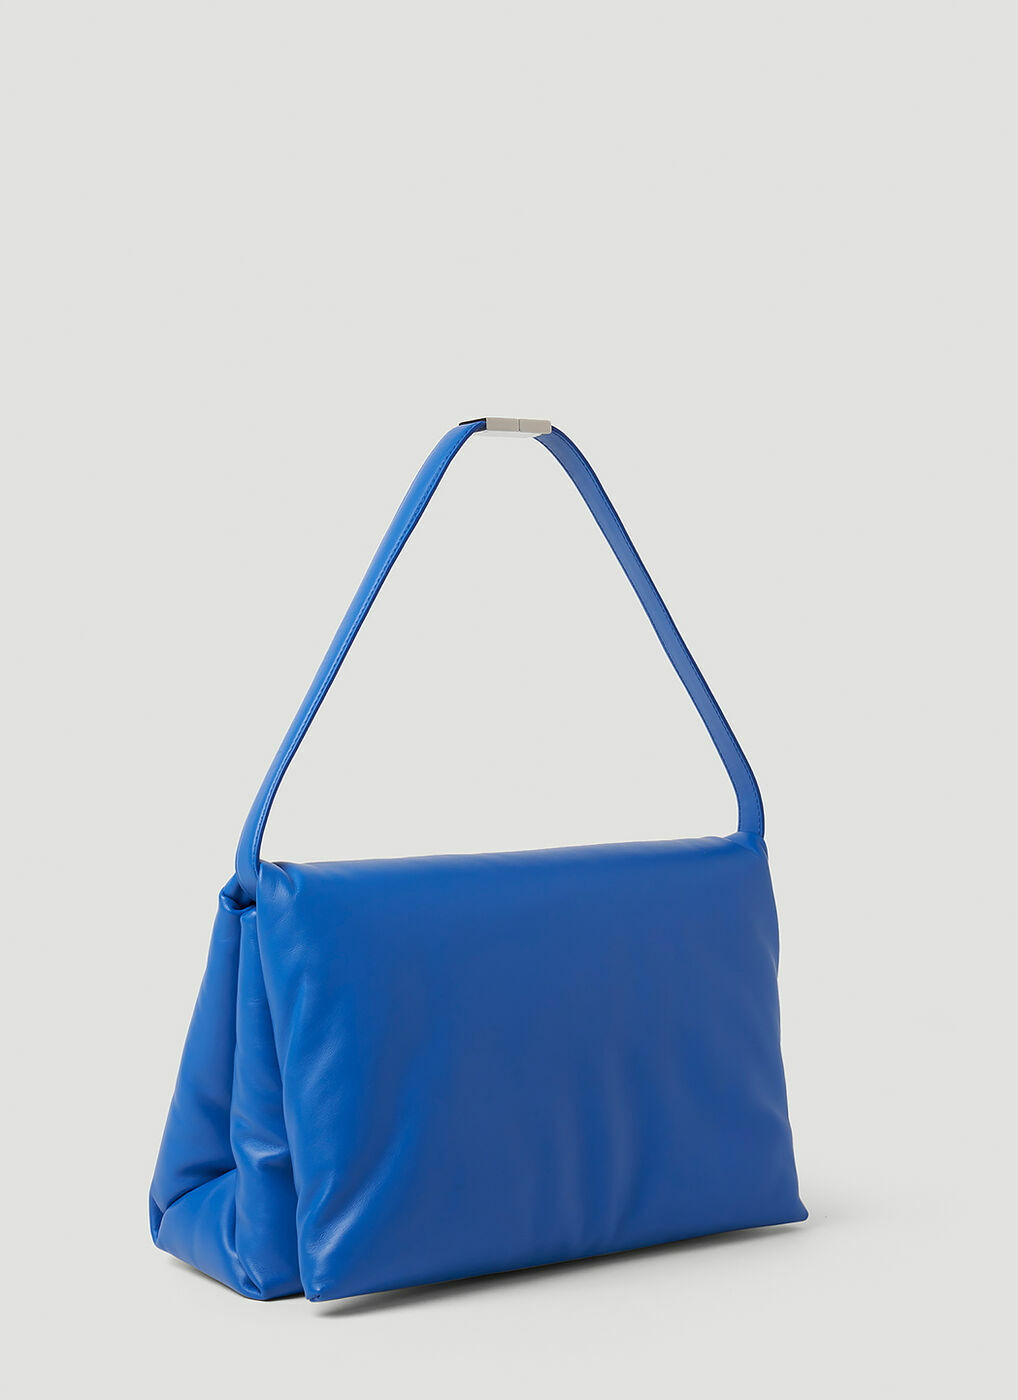 Marni - Prisma Small Shoulder Bag in Blue Marni